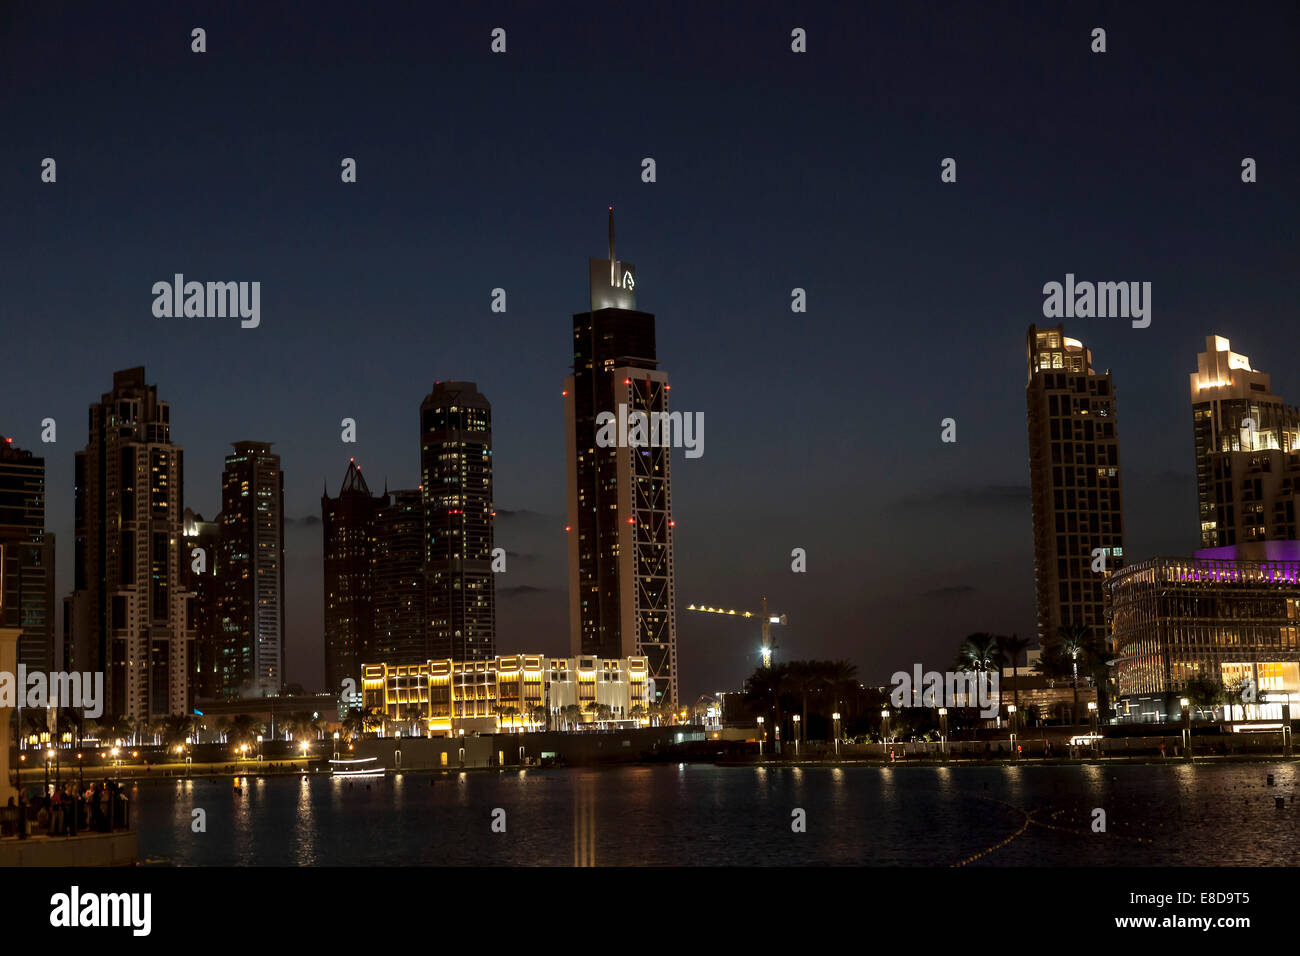 Cityscape, Skyscrapers, night scene, Dubai, United Arab Emirates Stock Photo